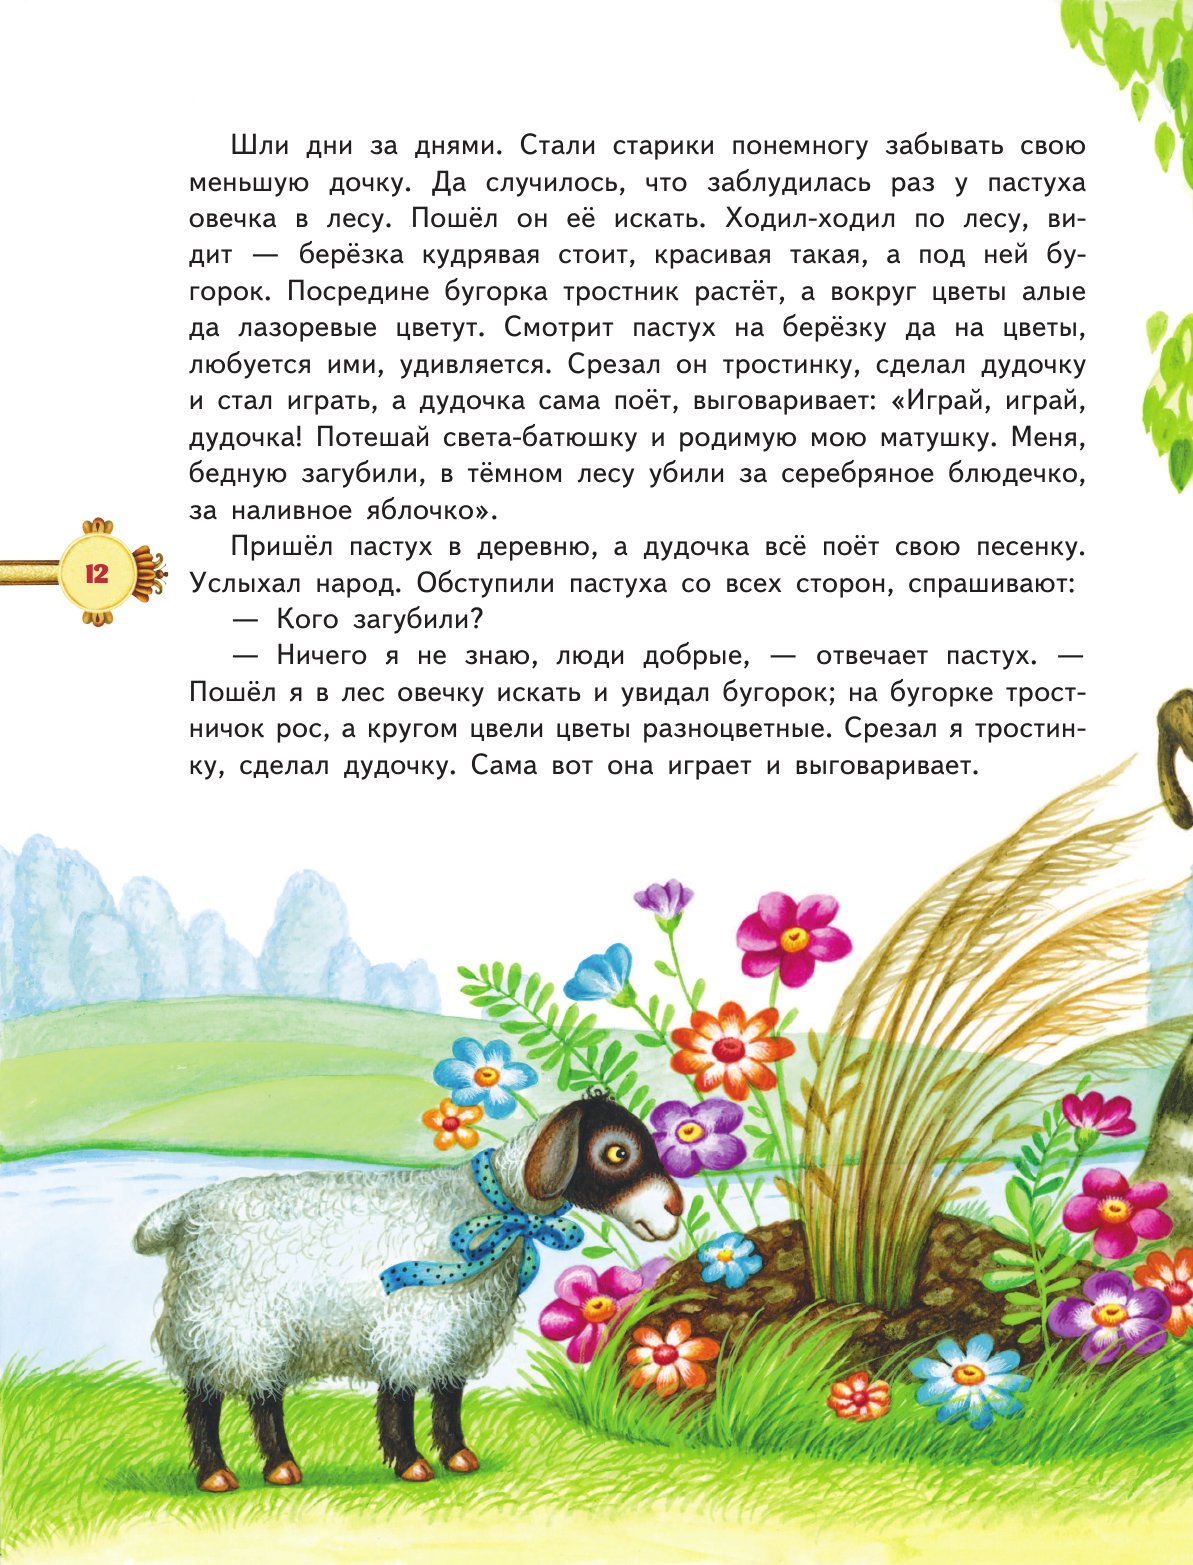 Наливное яблочко. Сборник волшебных русских сказок (ил. М. Литвиновой) (у.т.) - фото №16